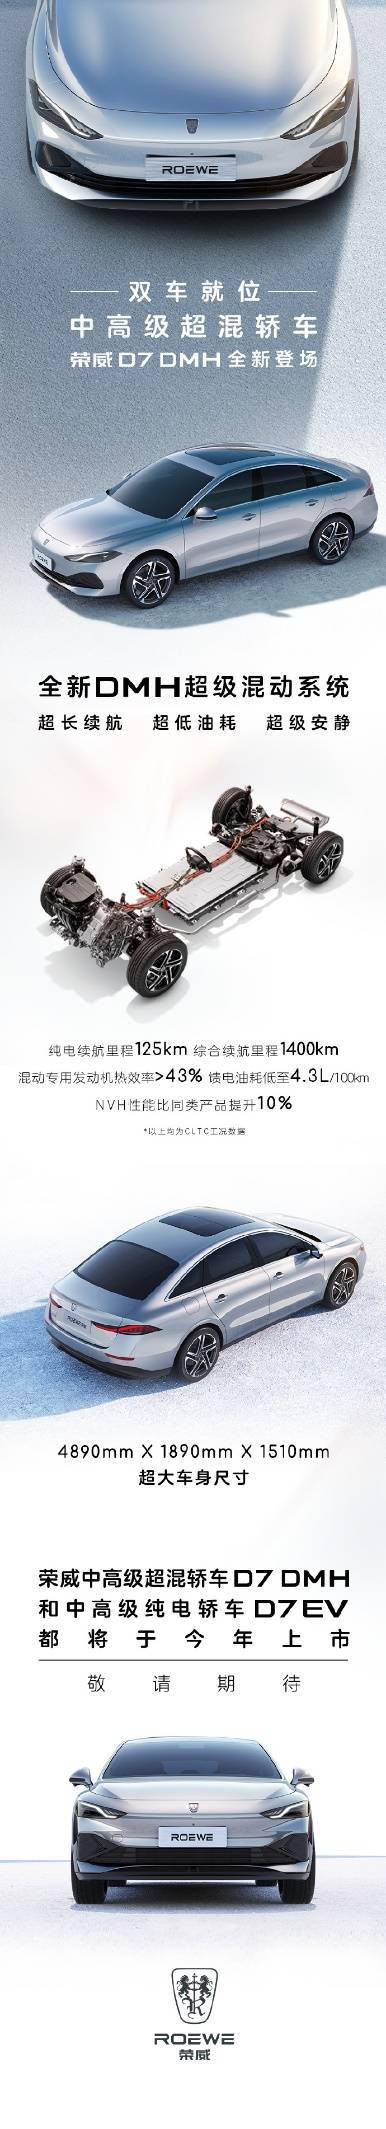 上汽荣威D7 DMH混动版车型官图发布 搭载了全新的 DMH“超级混动”系统